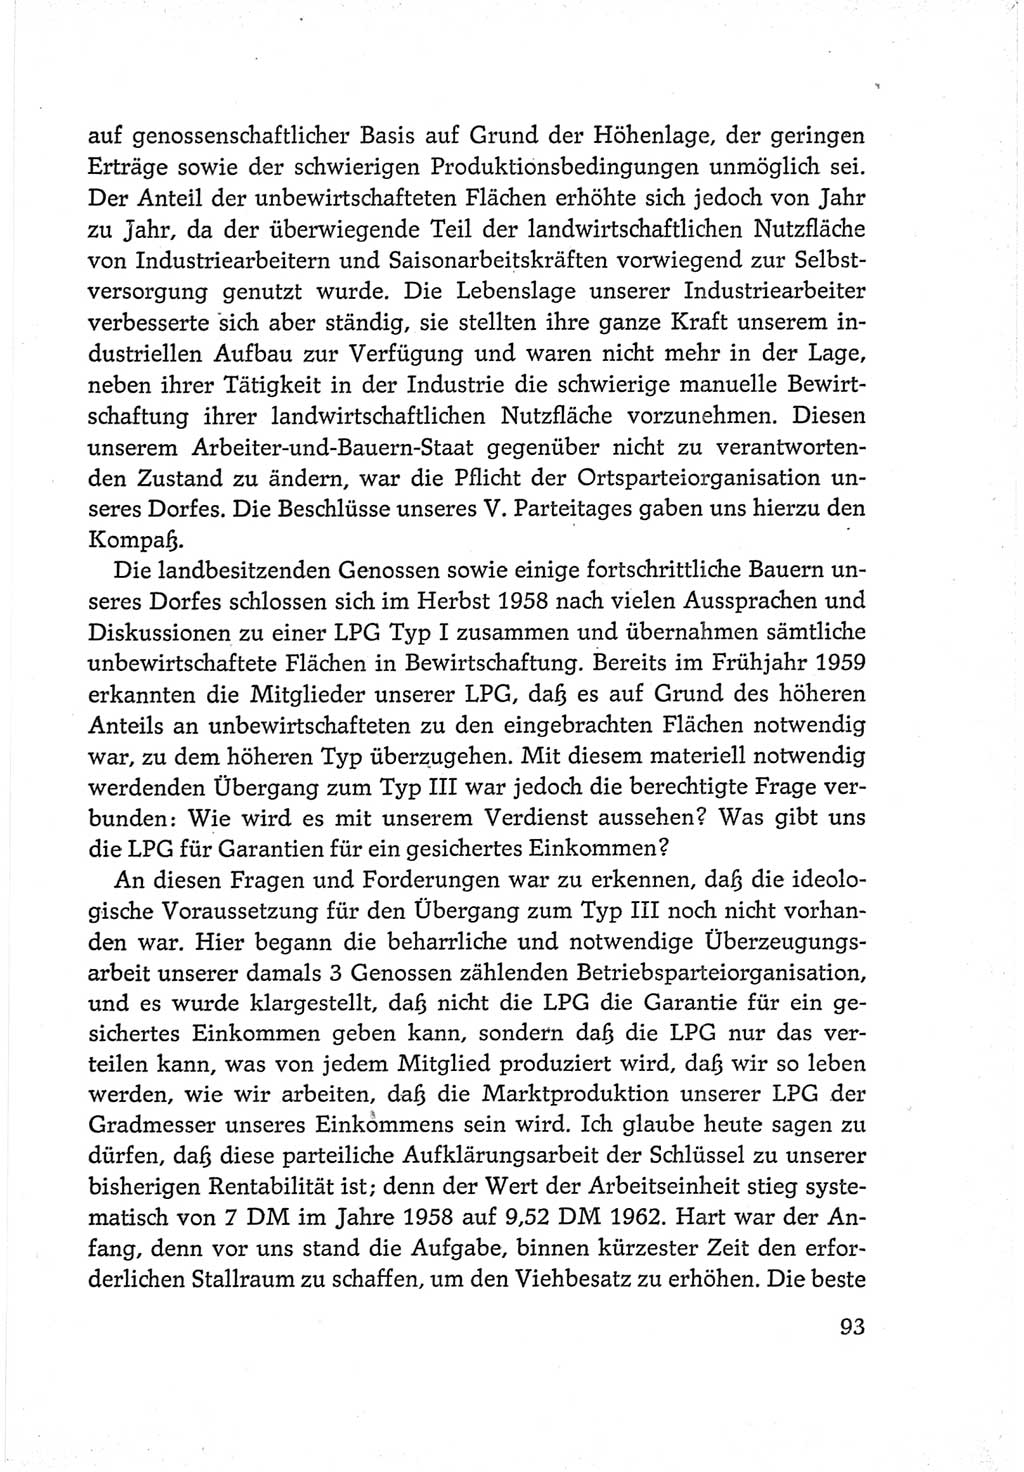 Protokoll der Verhandlungen des Ⅵ. Parteitages der Sozialistischen Einheitspartei Deutschlands (SED) [Deutsche Demokratische Republik (DDR)] 1963, Band Ⅲ, Seite 93 (Prot. Verh. Ⅵ. PT SED DDR 1963, Bd. Ⅲ, S. 93)